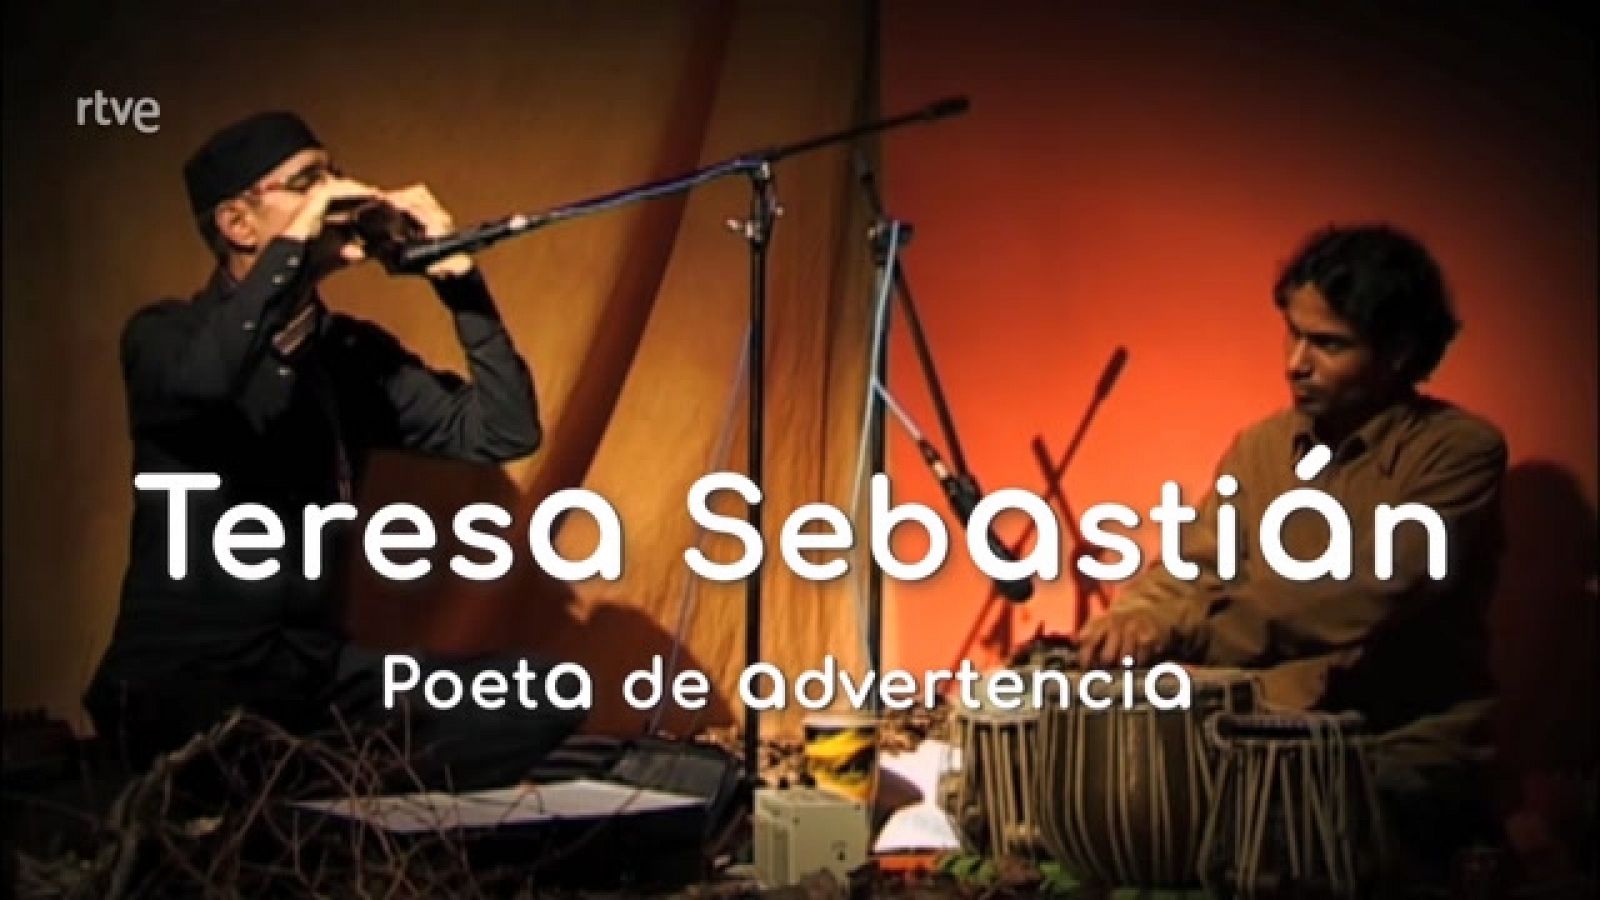 Teresa Sebastián. Poeta de advertencia